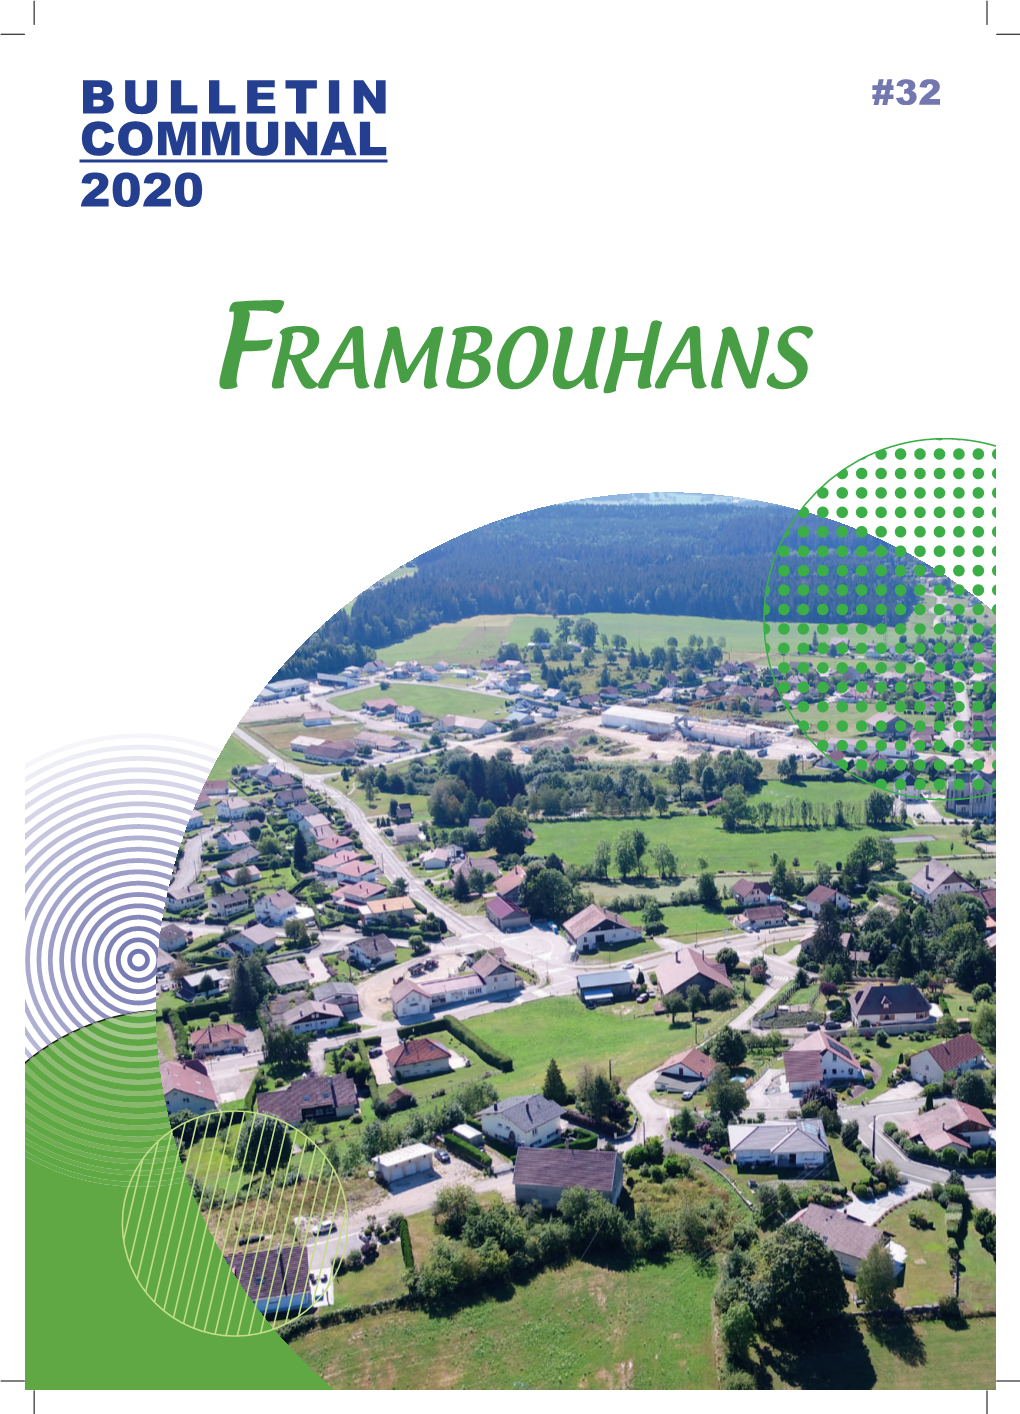 FRAMBOUHANS Frambouhans Et La Municipalité Édito Du Maire